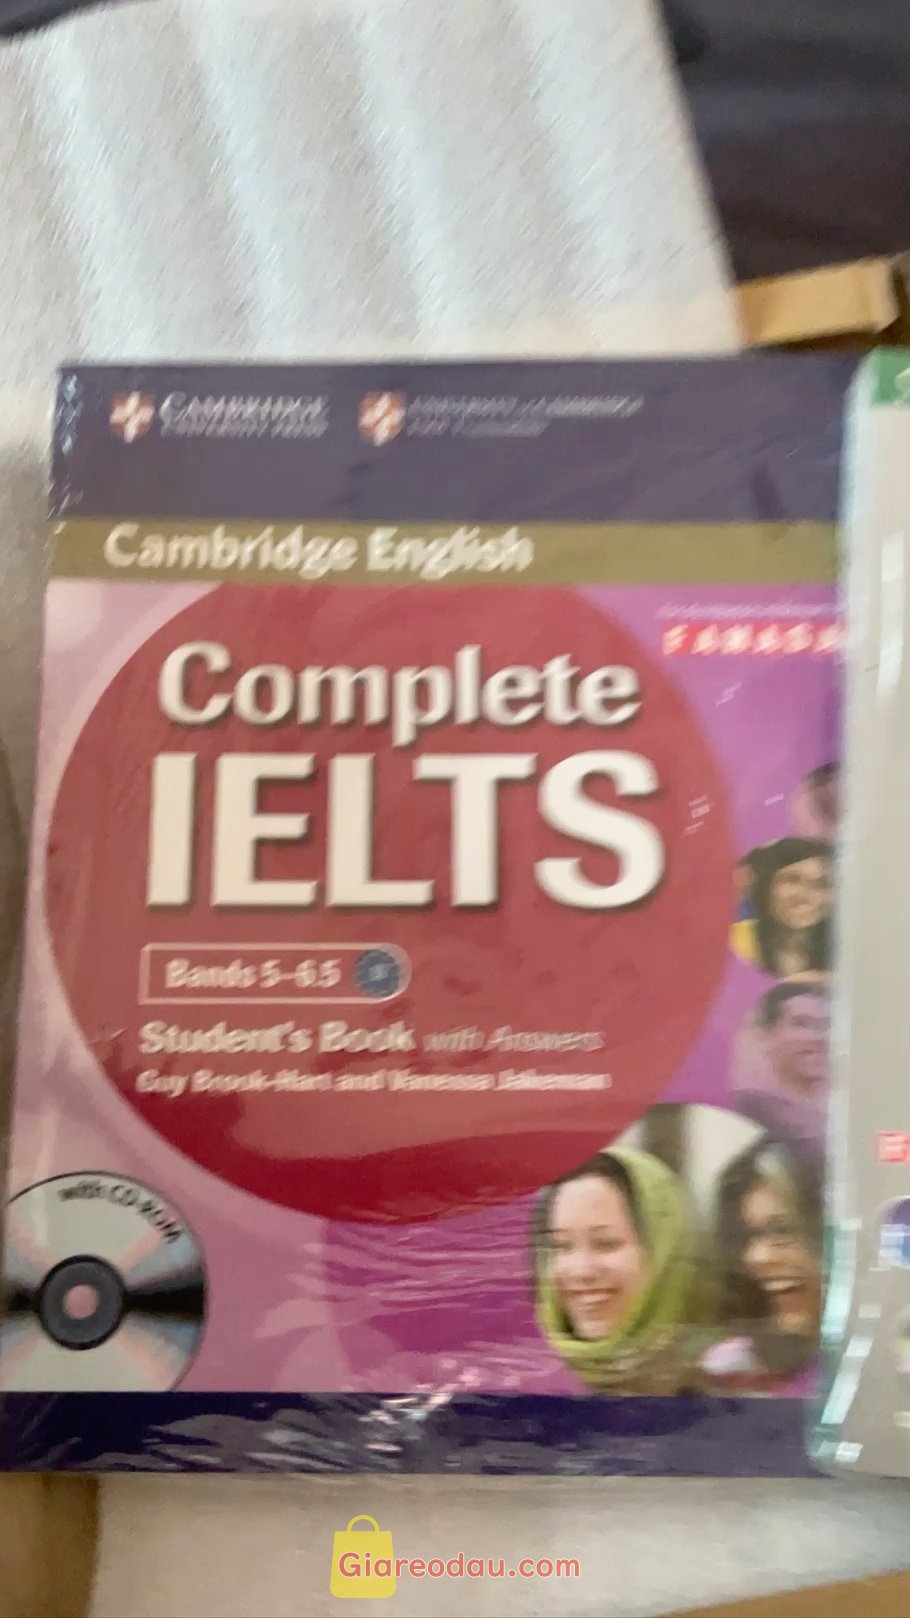 Giảm giá [Mã 5%] Sách Complete IELTS B2 Student's Book with answer & CD-Rom. Sách okeee lắm nha mng nội dung phù hợp vs người trình độ b2. giao. 